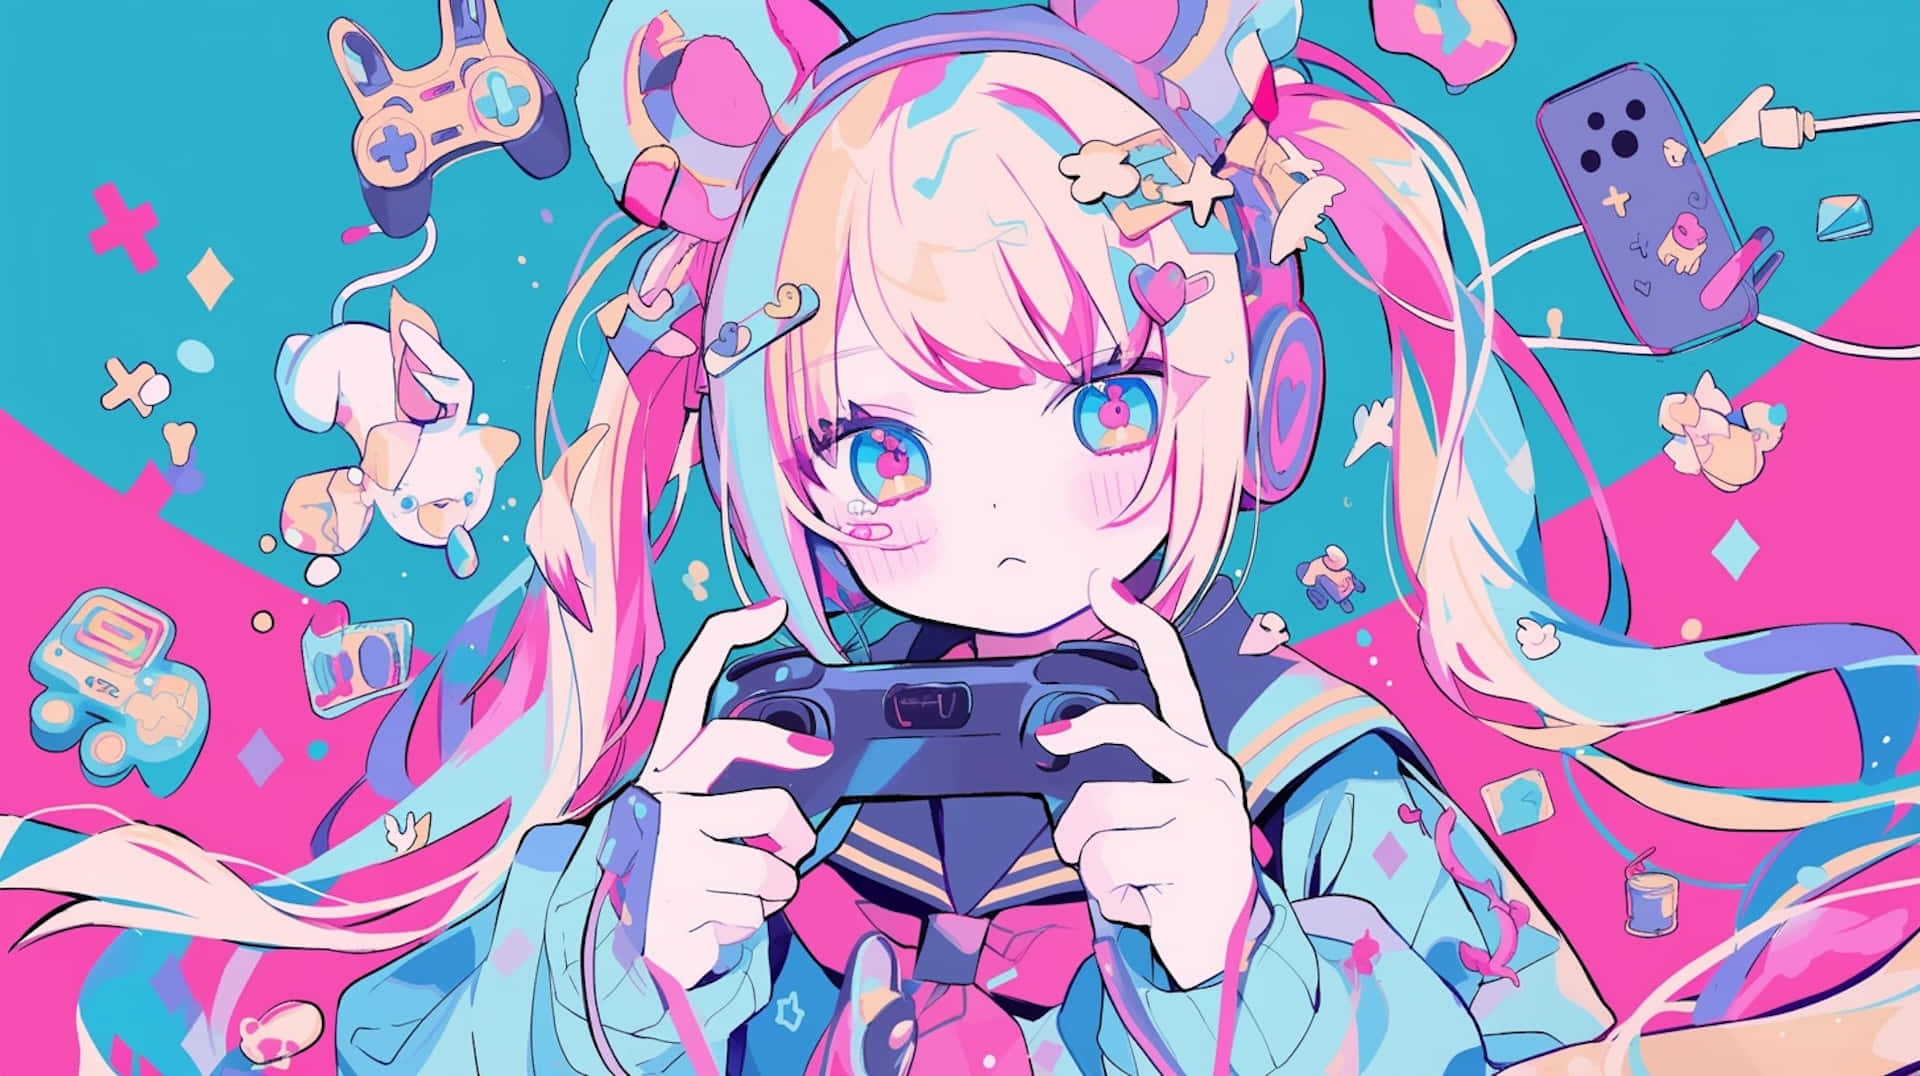 Colorful Anime Gamer Girl Illustration Wallpaper